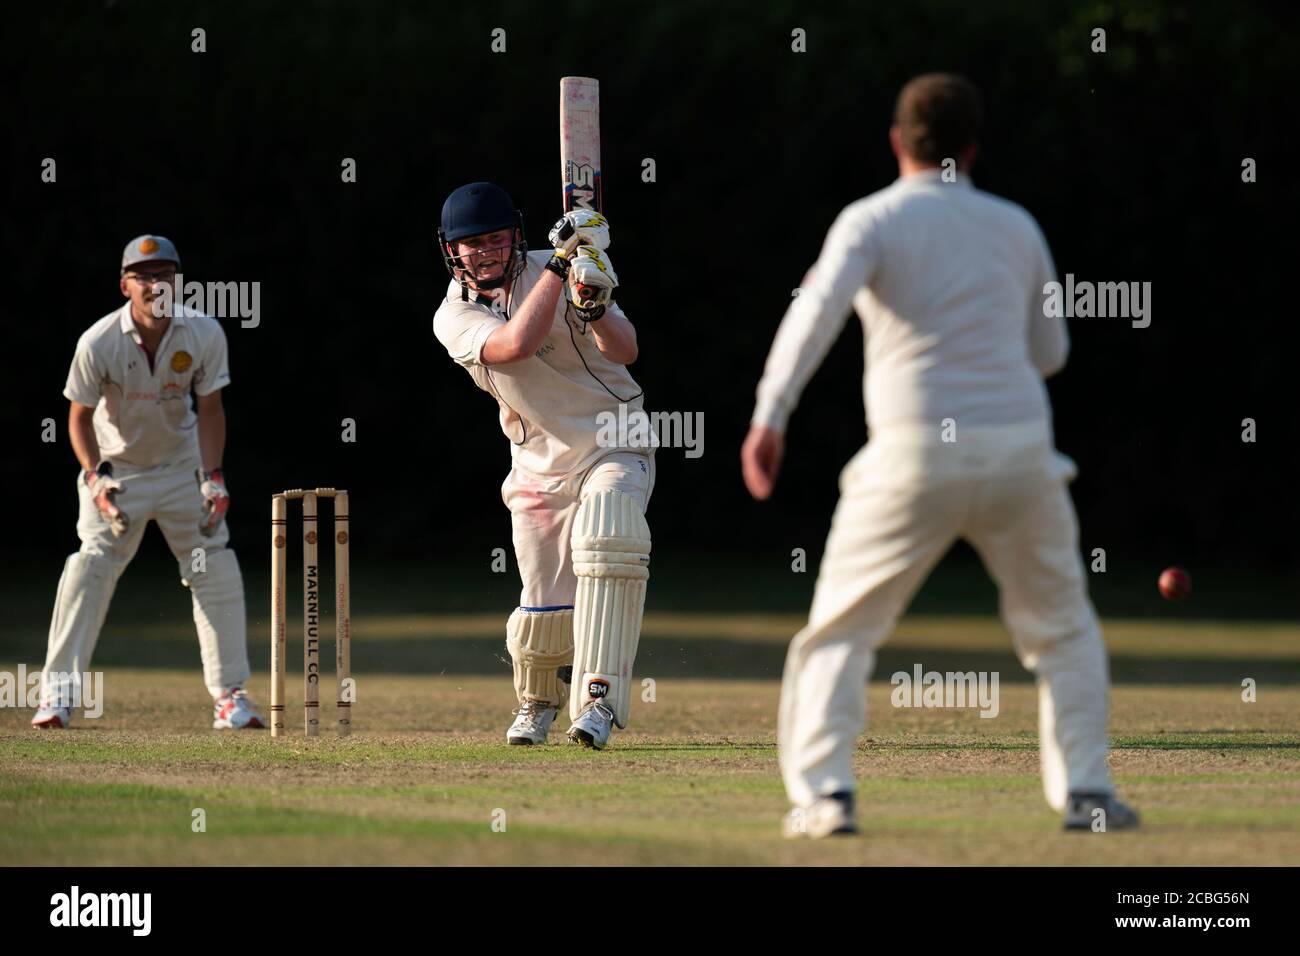 Batsman in action Stock Photo